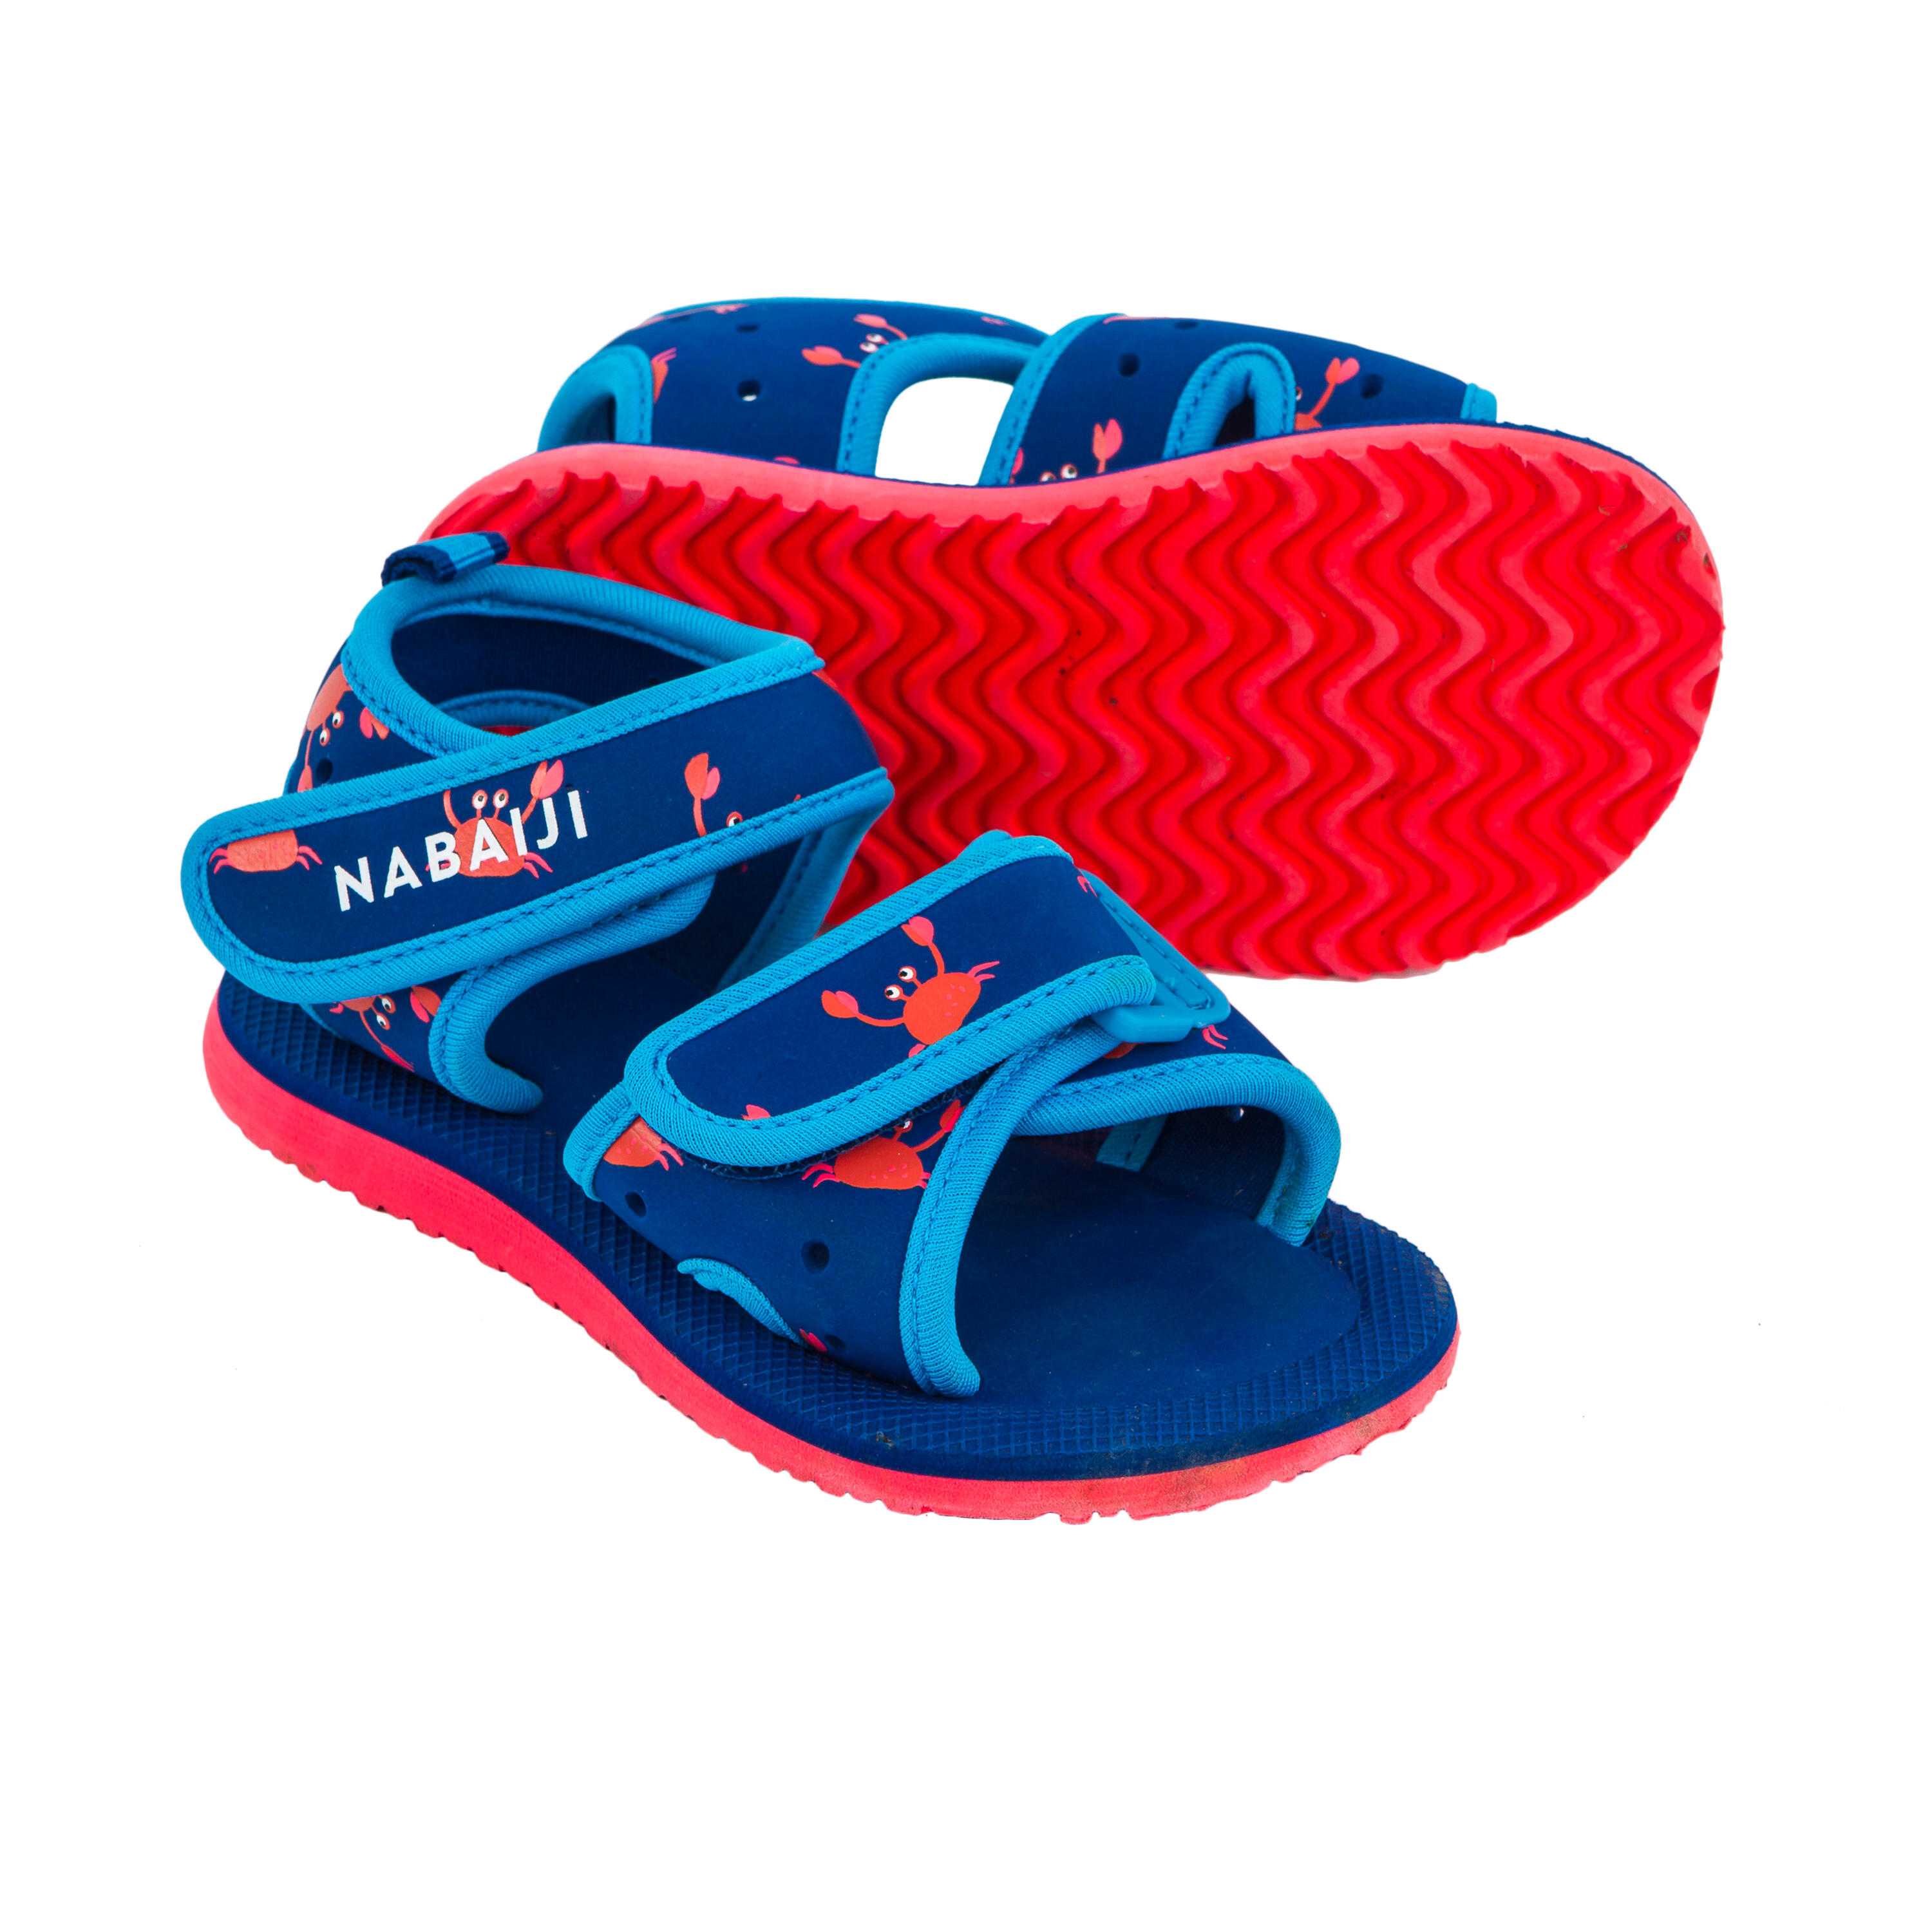 Babies' Swimming Pool Sandals - Blue - NABAIJI